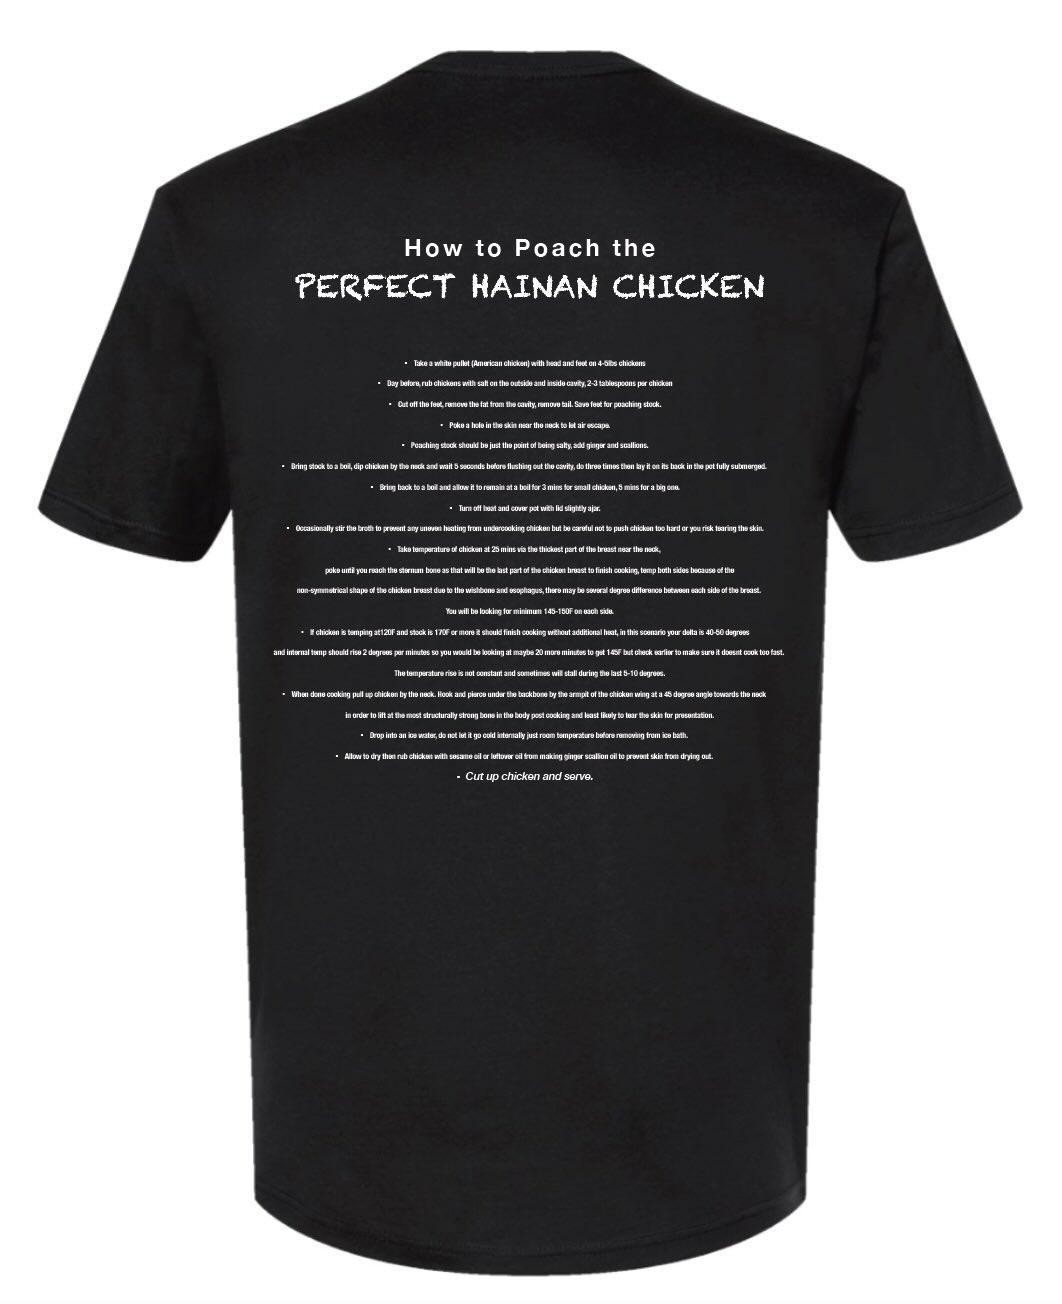 PRD Hainan Shirt PICKUP 3/16